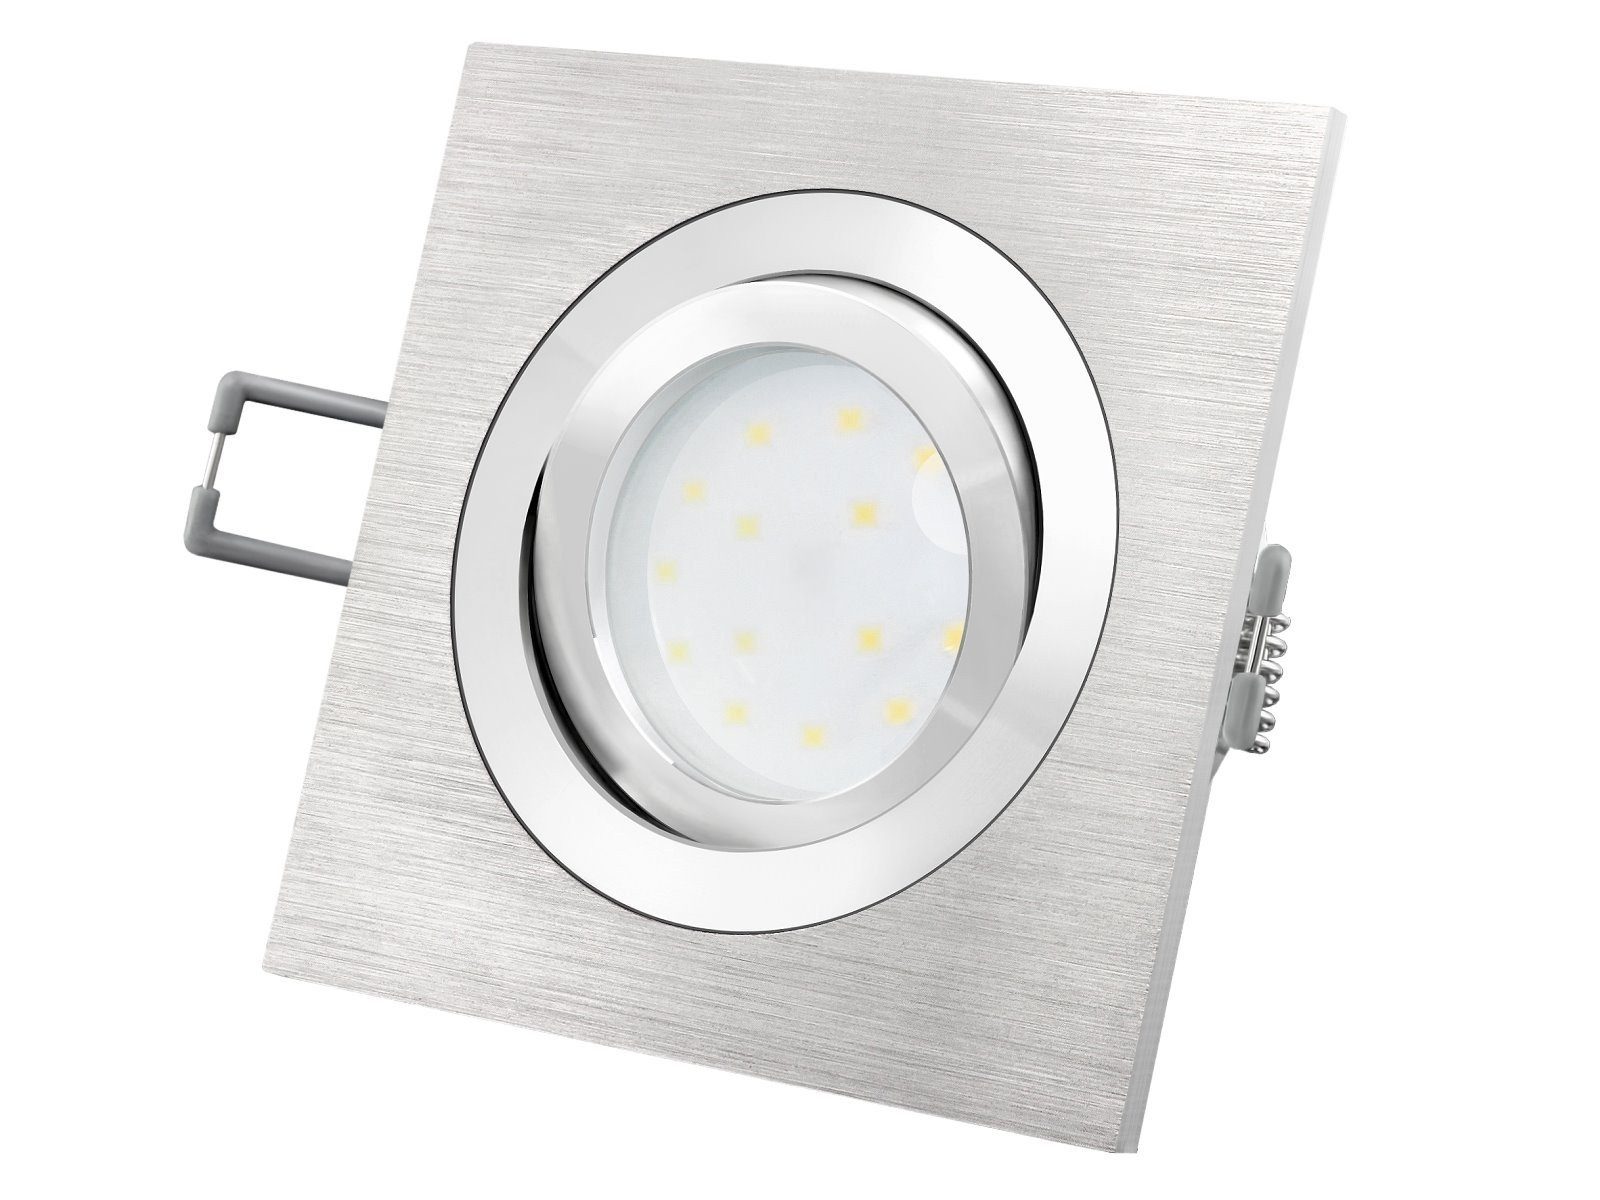 SSC-LUXon LED Einbaustrahler QF-2 Alu LED-Einbauspot flach schwenkbar mit LED-Modul 230V, 5W SMD, Warmweiß